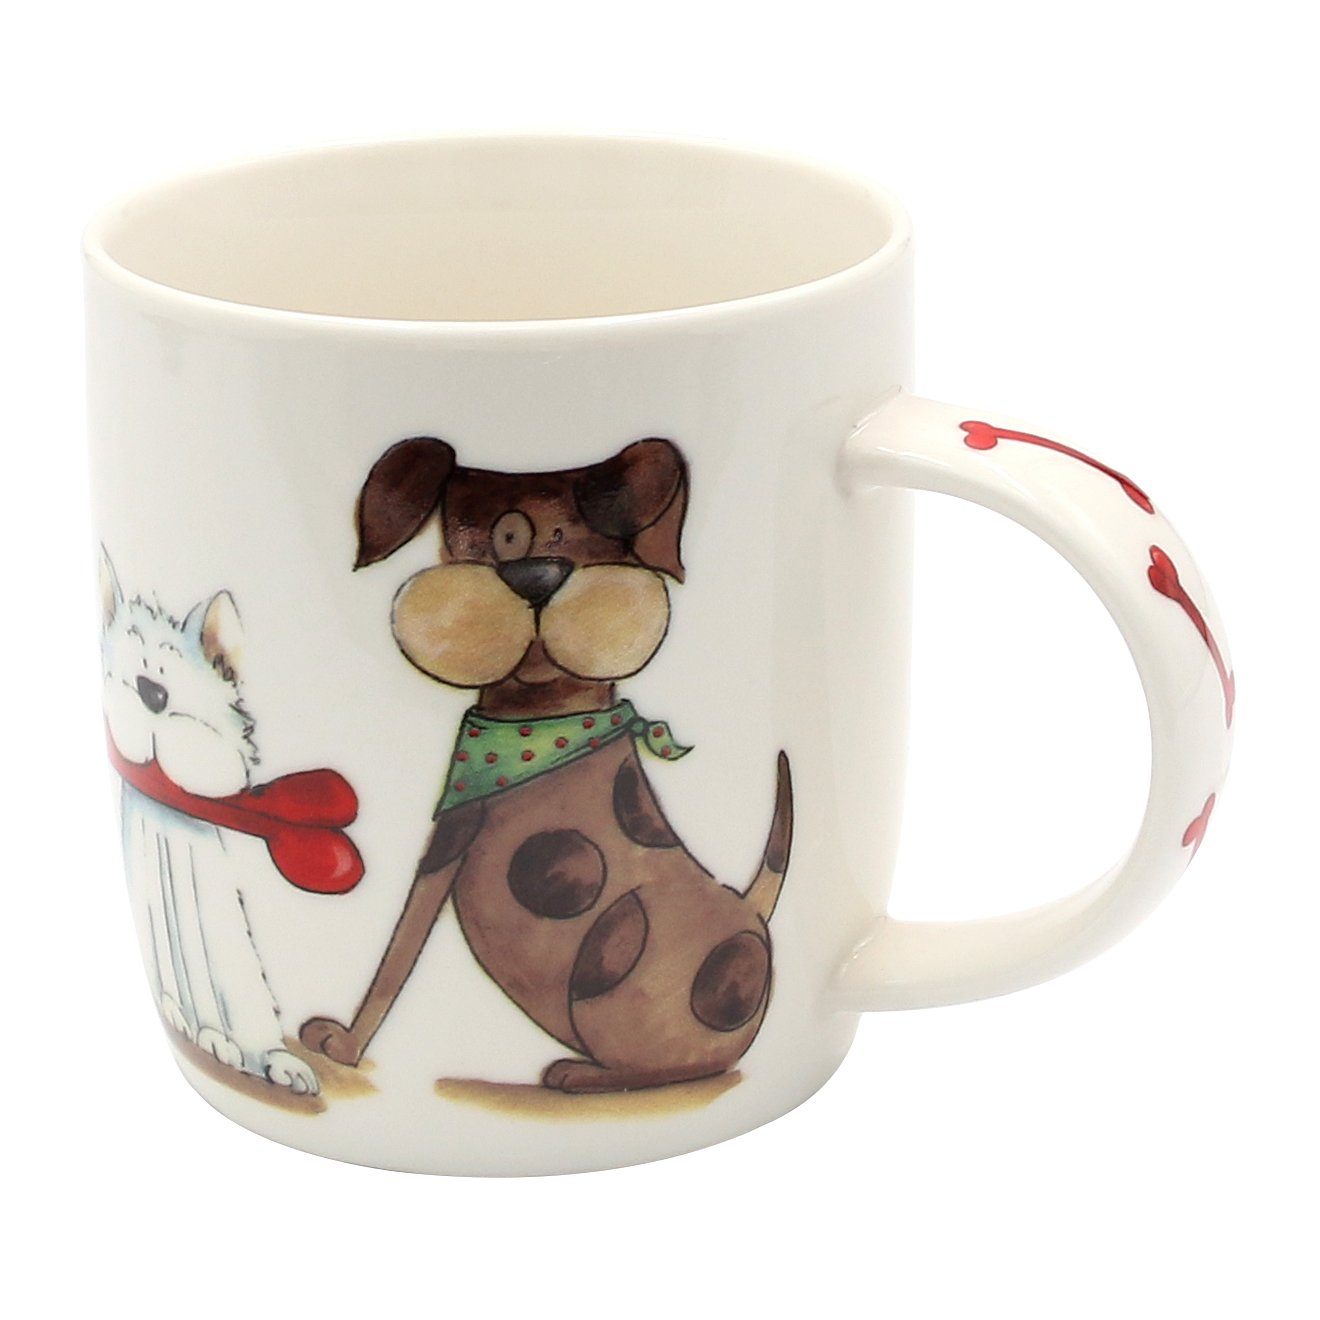 Dekohelden24 Tasse Kaffeebecher Kaffeetasse aus Porzellan Hunde / Katze, Porzellan braun